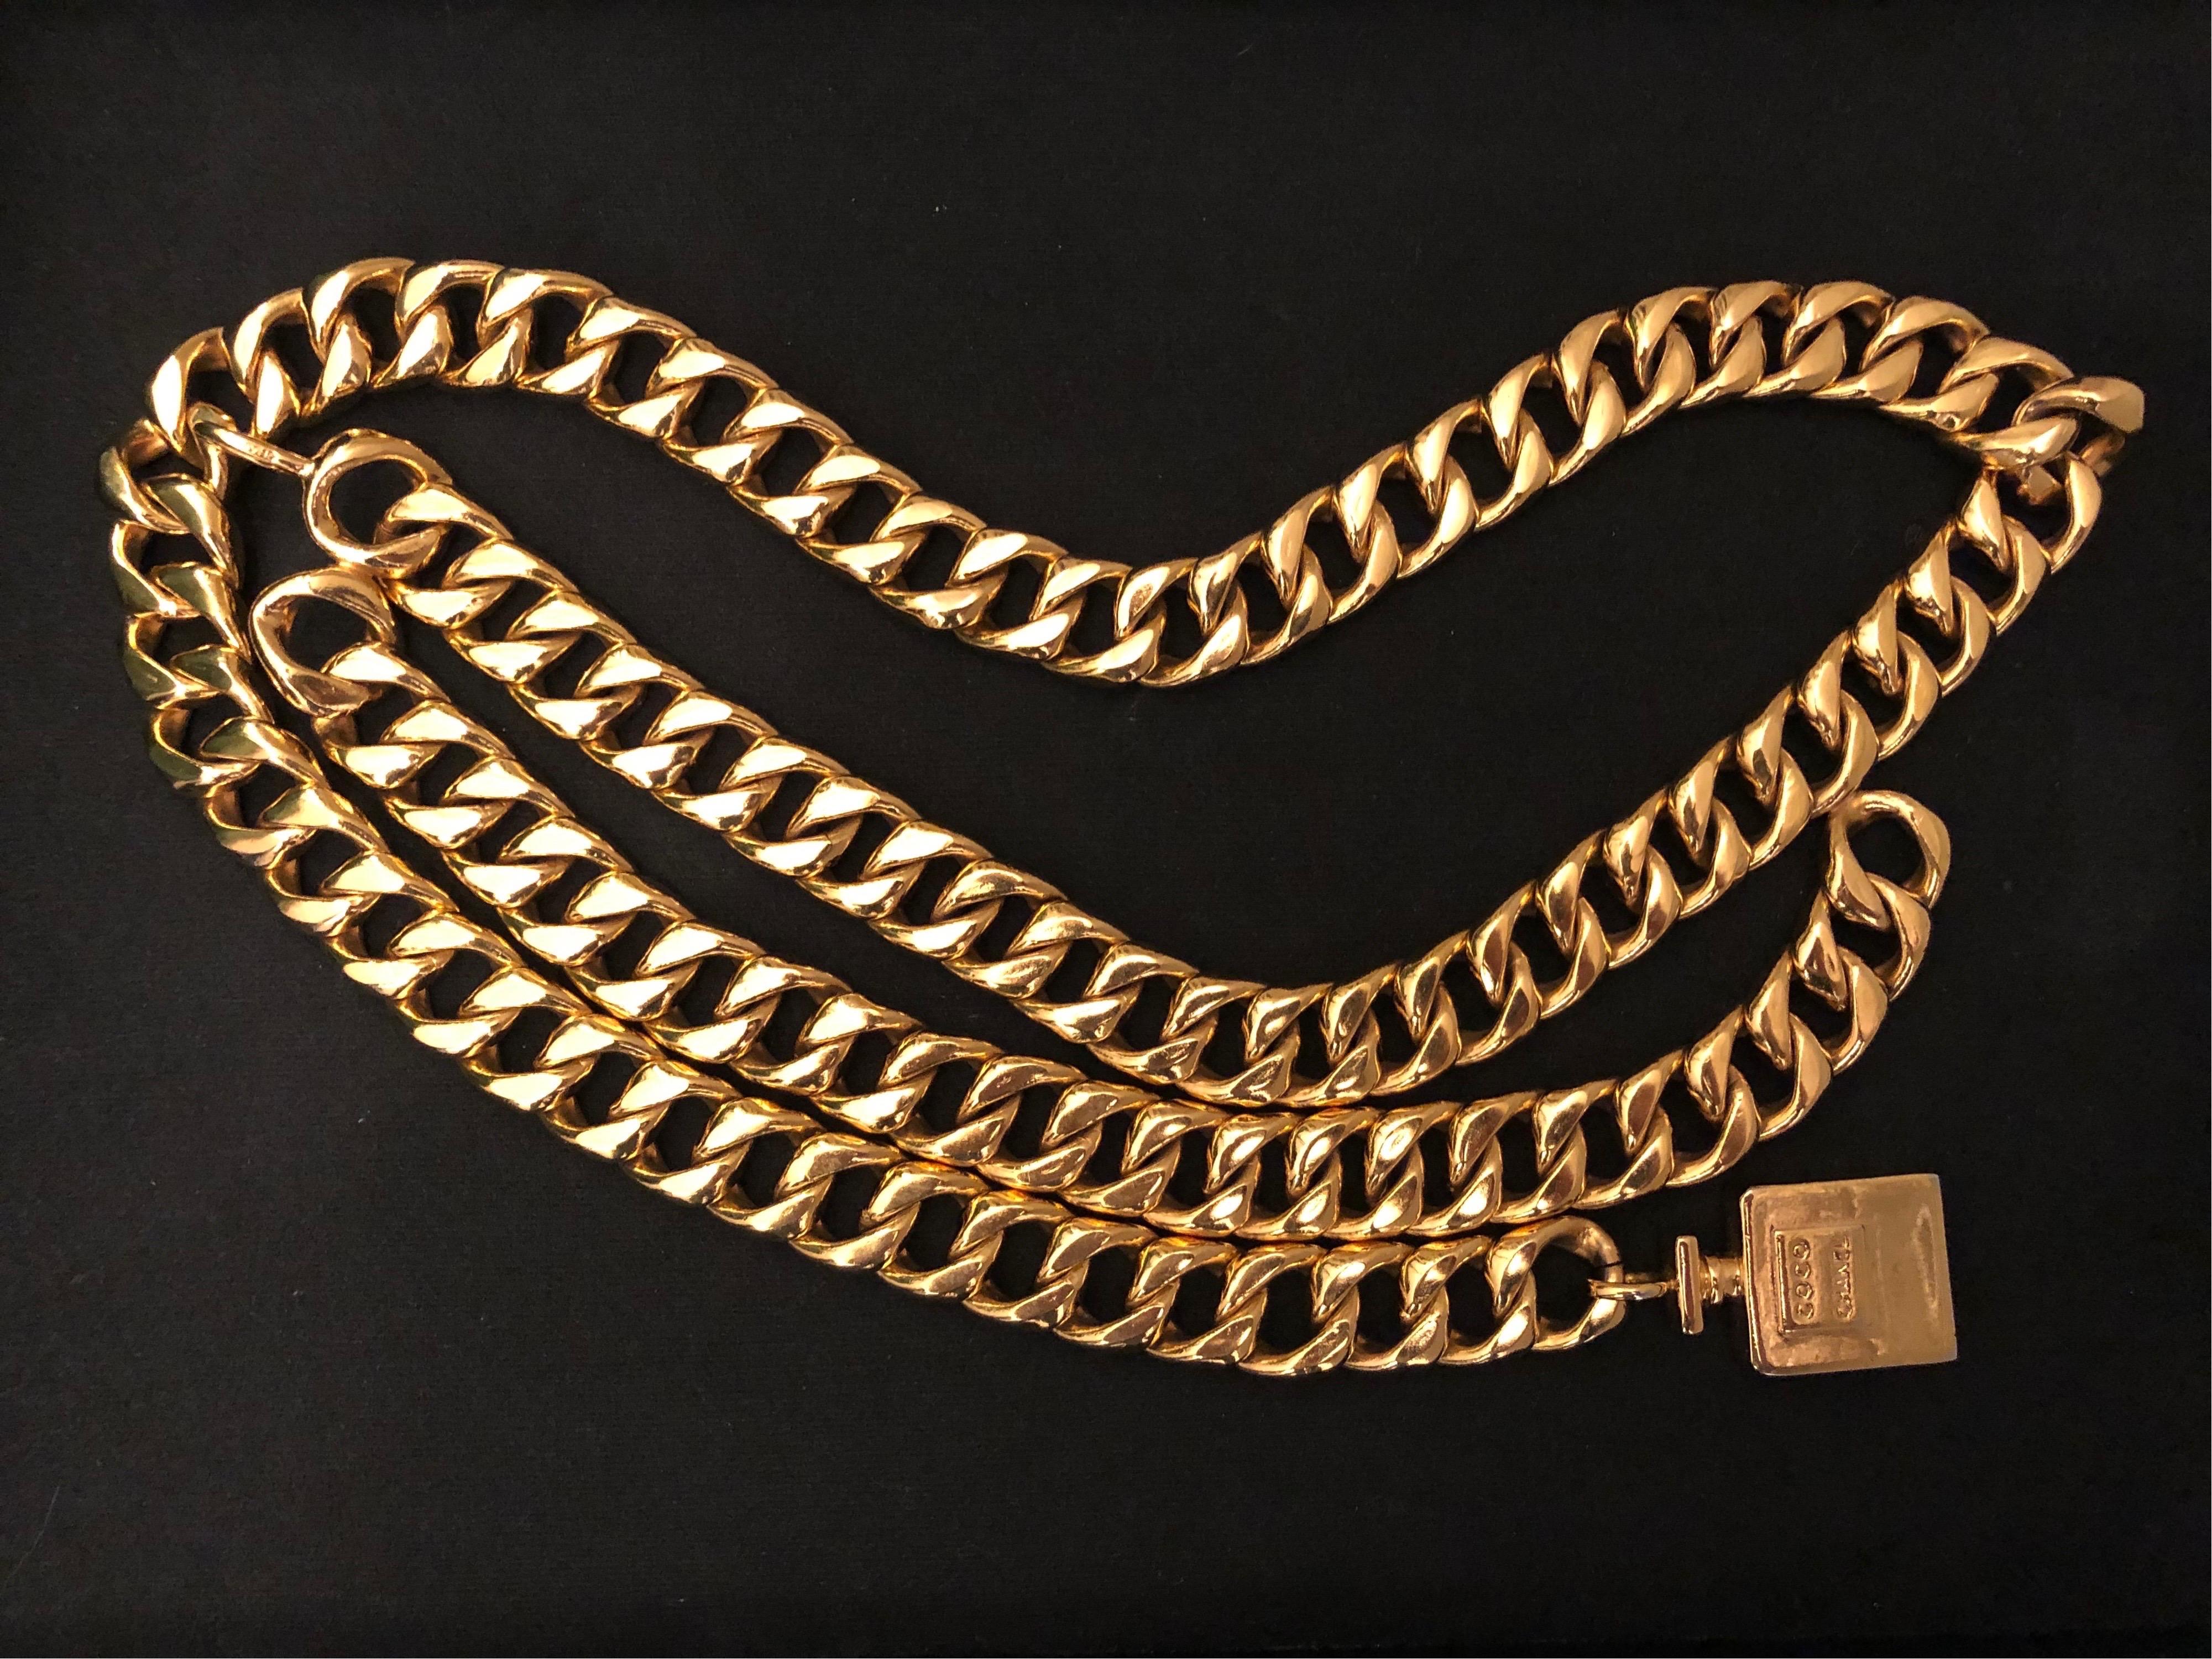 Ceinture en chaîne dorée Chanel des années 1980 avec breloque en forme de flacon de parfum Chanel COCO en or. Il peut être porté comme une ceinture ou un collier. Estampillé CHANEL. Fermeture à crochet réglable. 92 cm de longueur 1,8 cm de largeur.